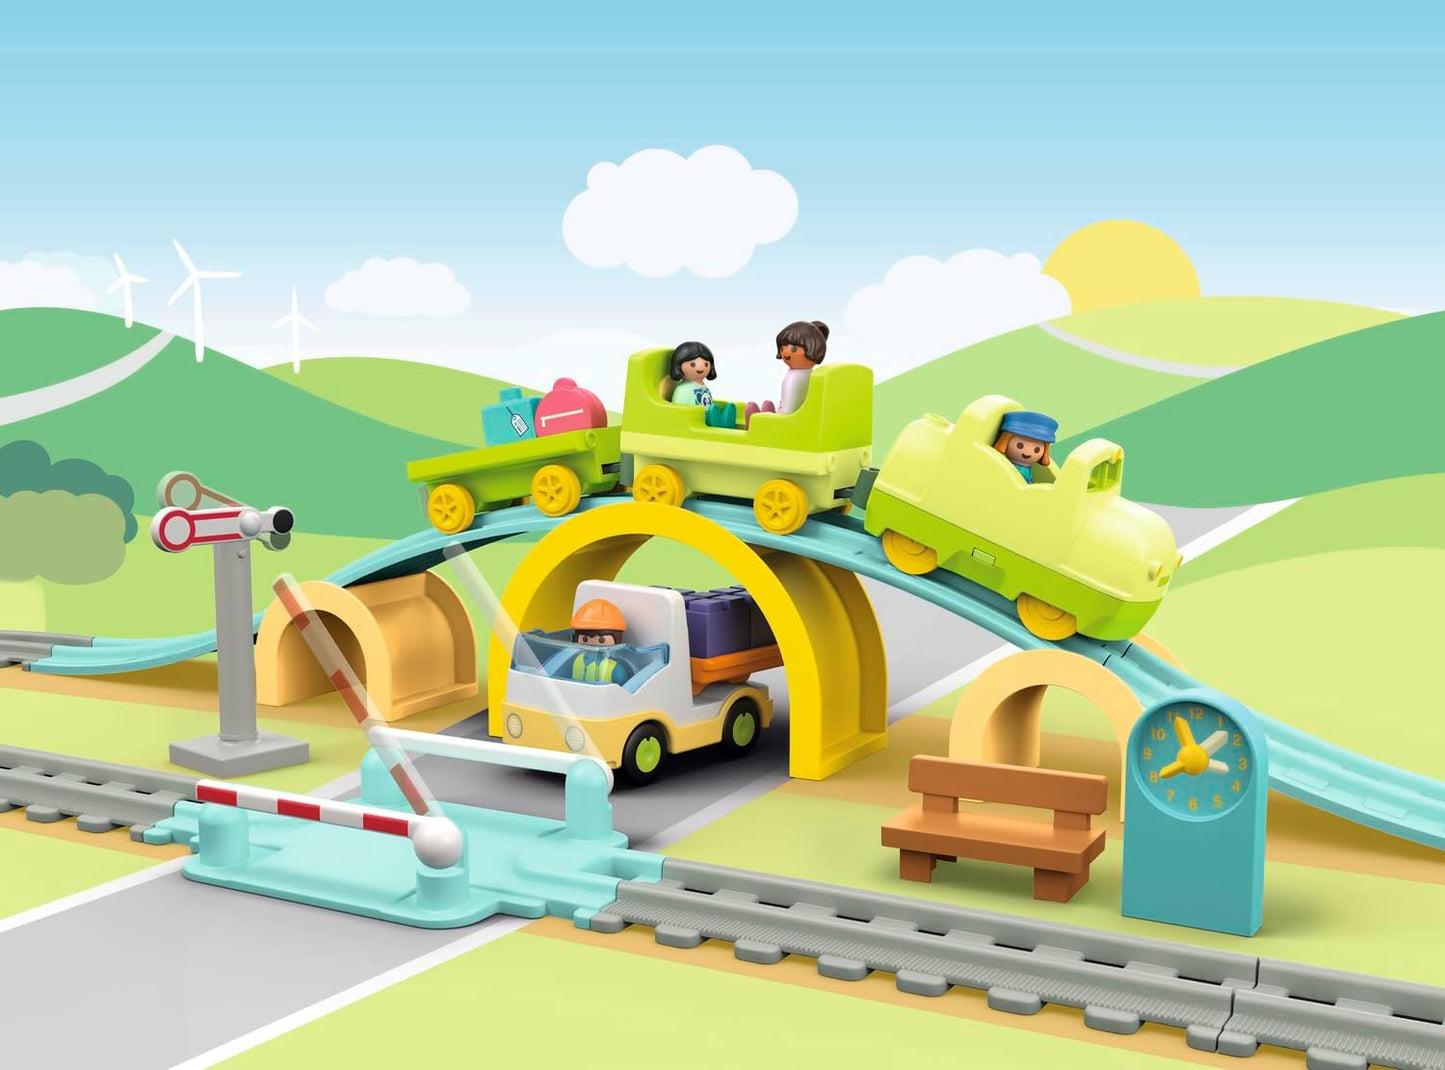 PLAYMOBIL 71593 1.2.3: Conjunto de trem grande, com vagões, barreiras e um relógio, brinquedo educativo e brinquedo de desenvolvimento de aprendizagem precoce para crianças pequenas, conjunto adequado para crianças de 12 meses ou mais